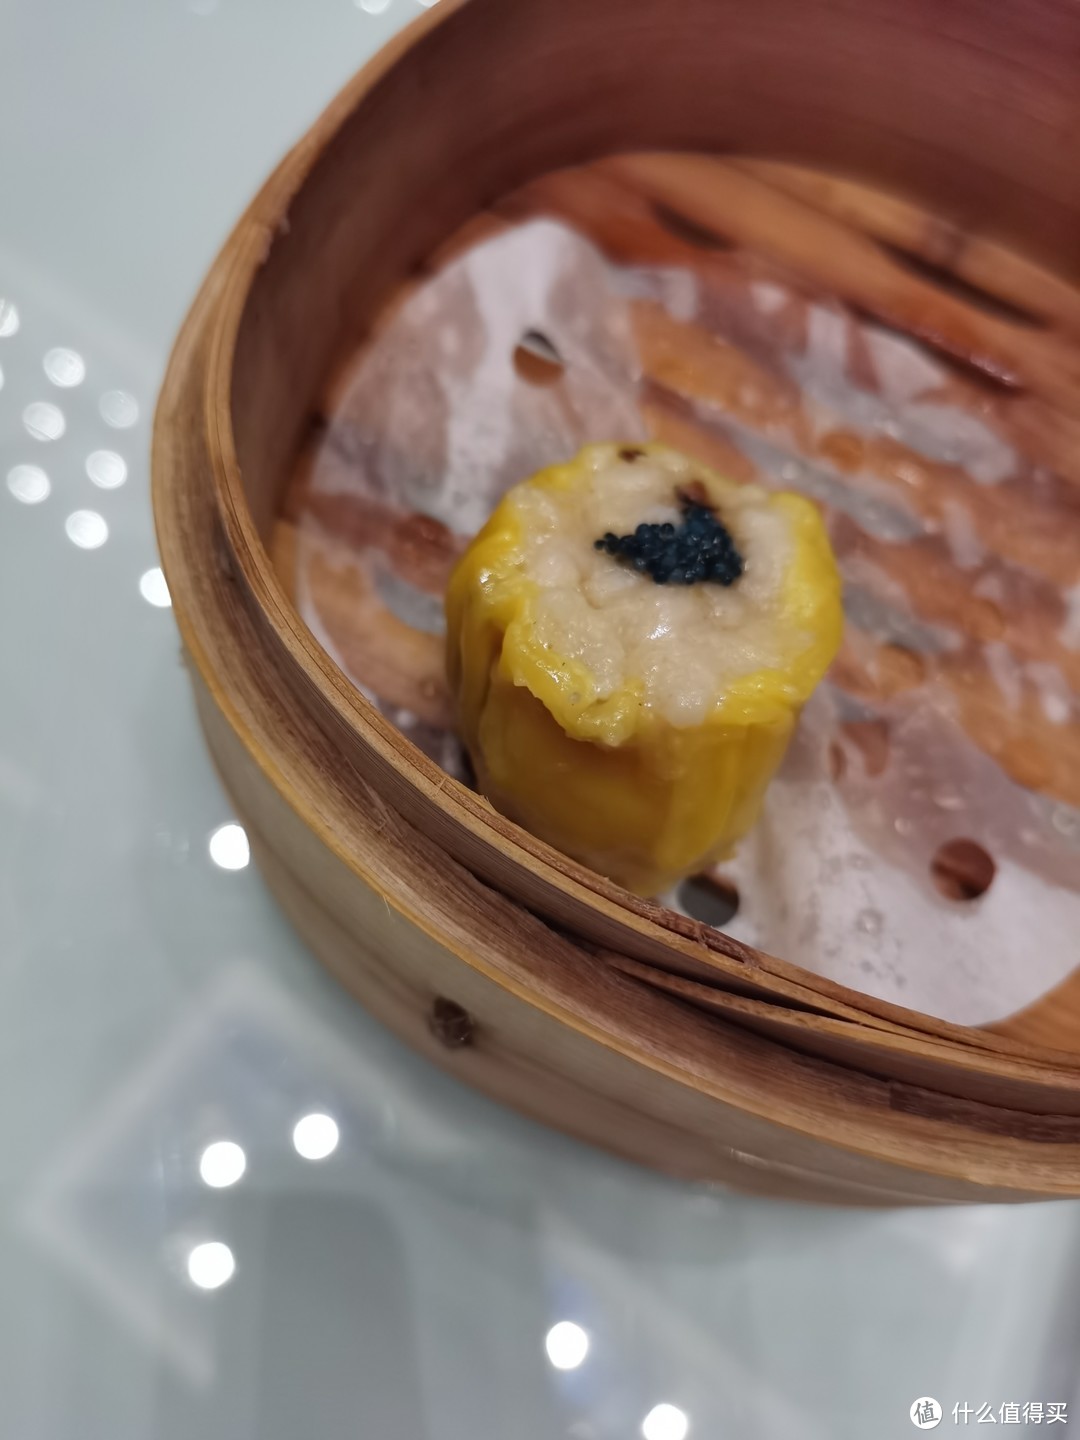 广州旅游必体验的传统饮食文化之早茶文化